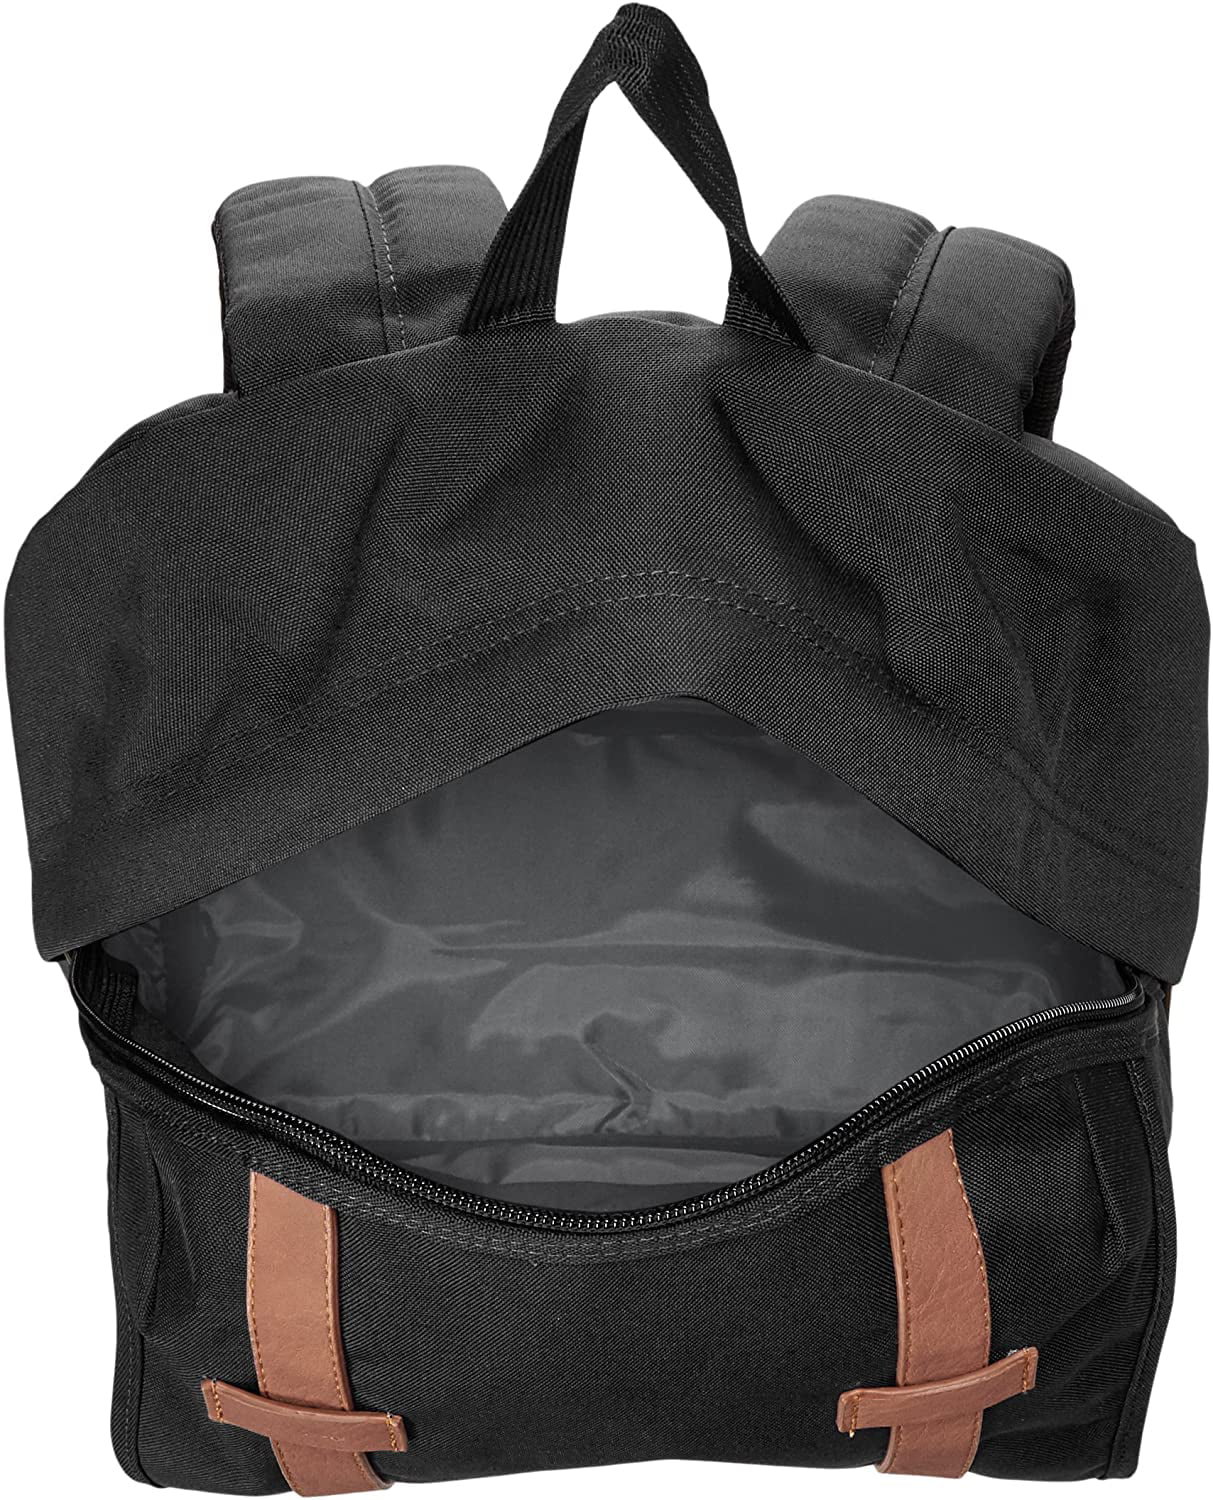 JanSport Cortlandt 15-inch Laptop Backpack-25 Liter School and Travel Pack,  Boho Floral Gra, One Size 